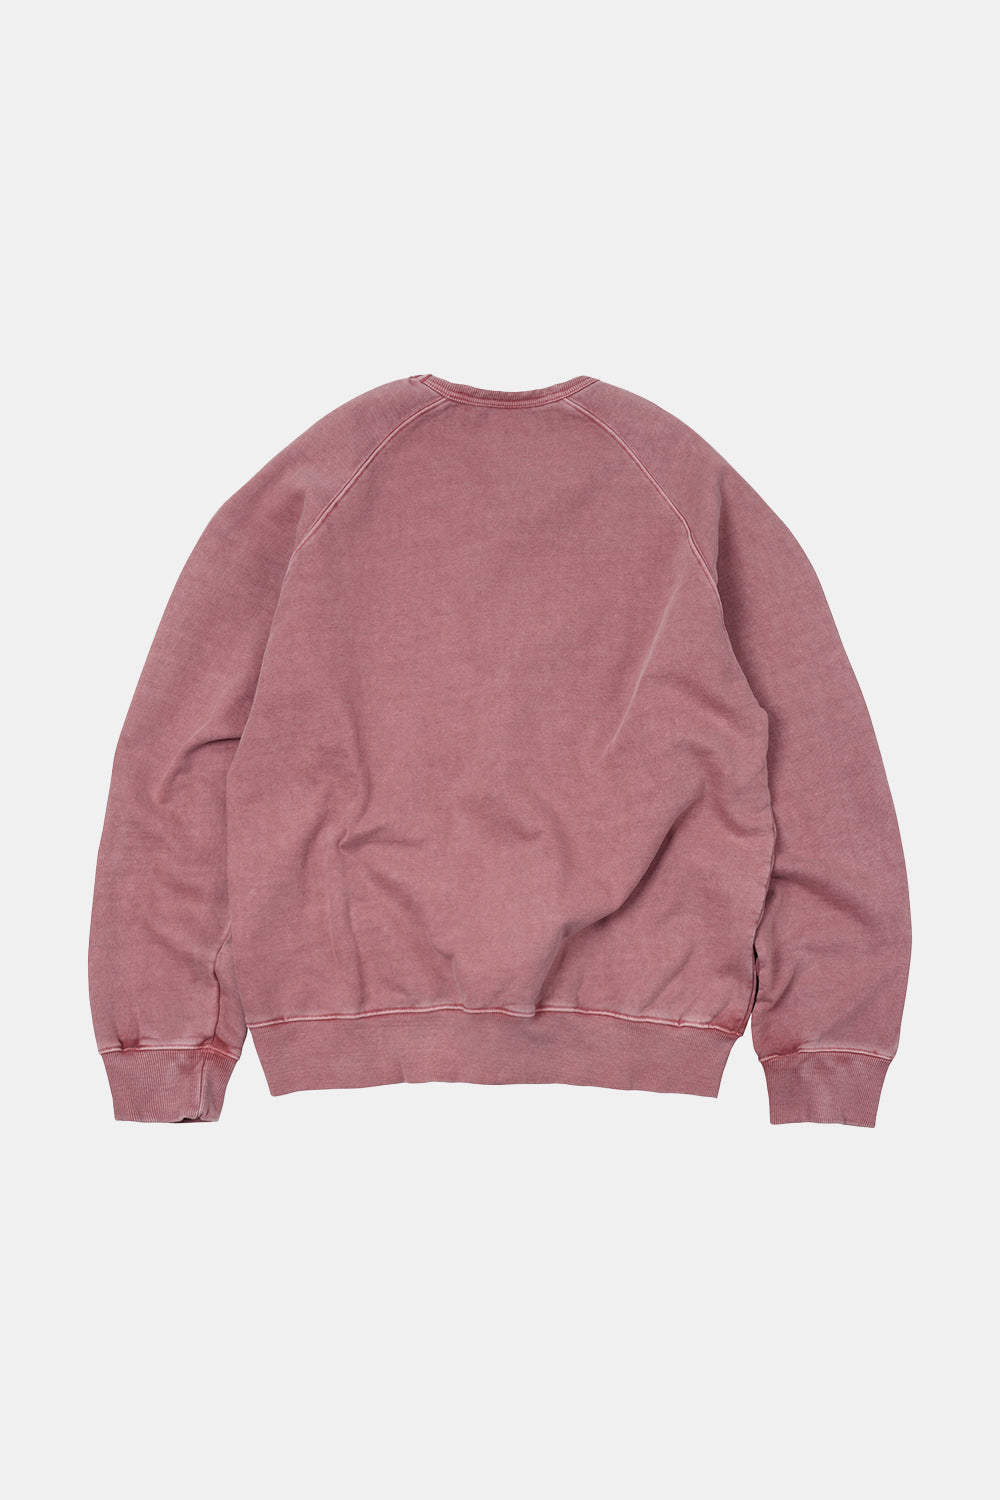 Frizmworks OG Pigment Dyeing Sweatshirt (Pink) | Number Six